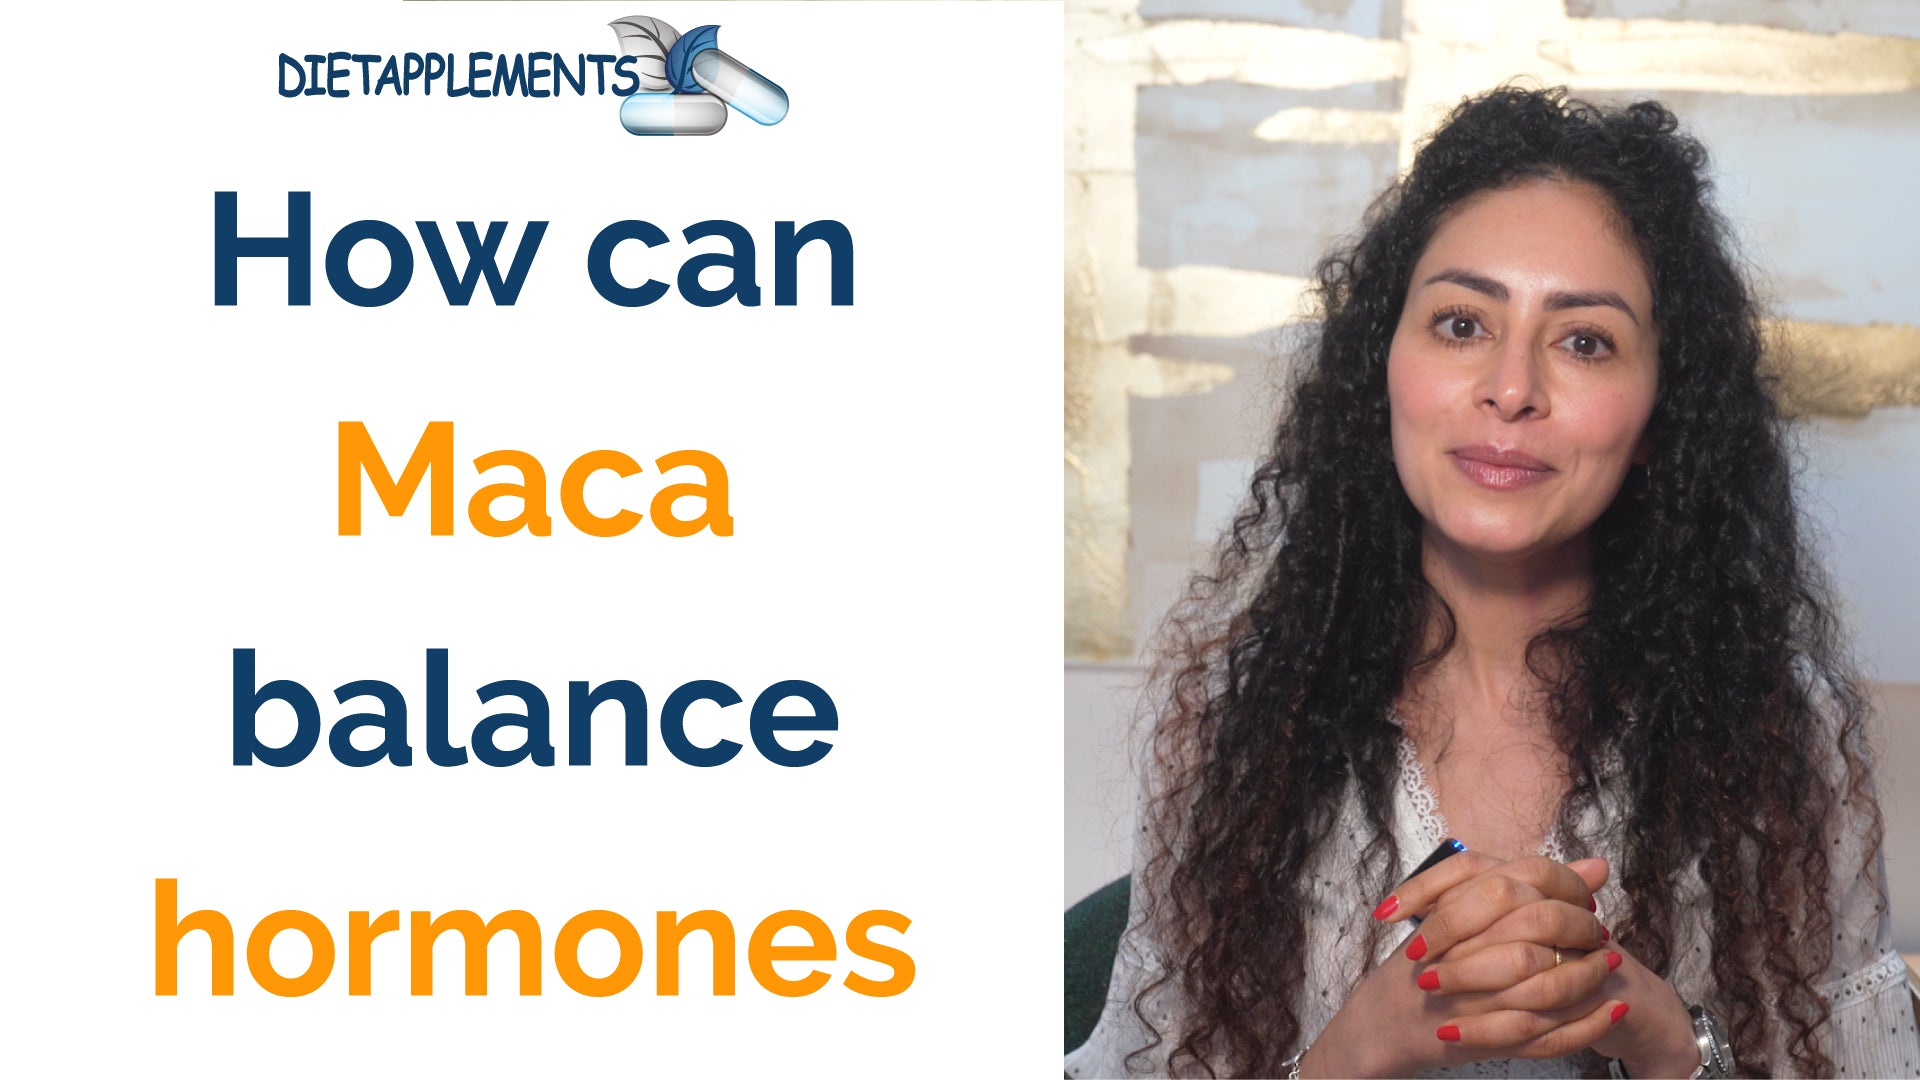 How can maca balance hormones